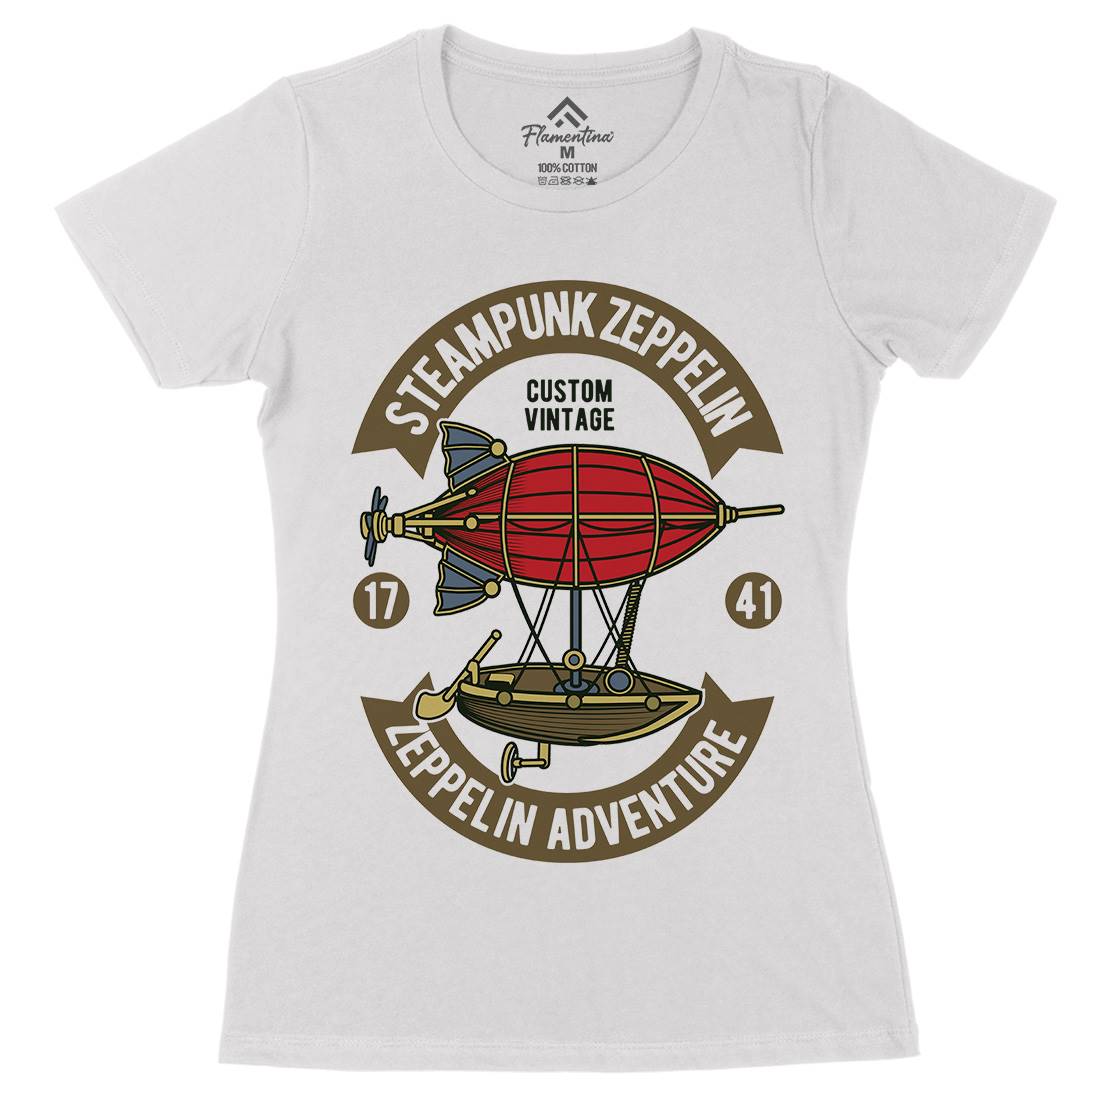 Steampunk Zeppelin Womens Organic Crew Neck T-Shirt Vehicles D584